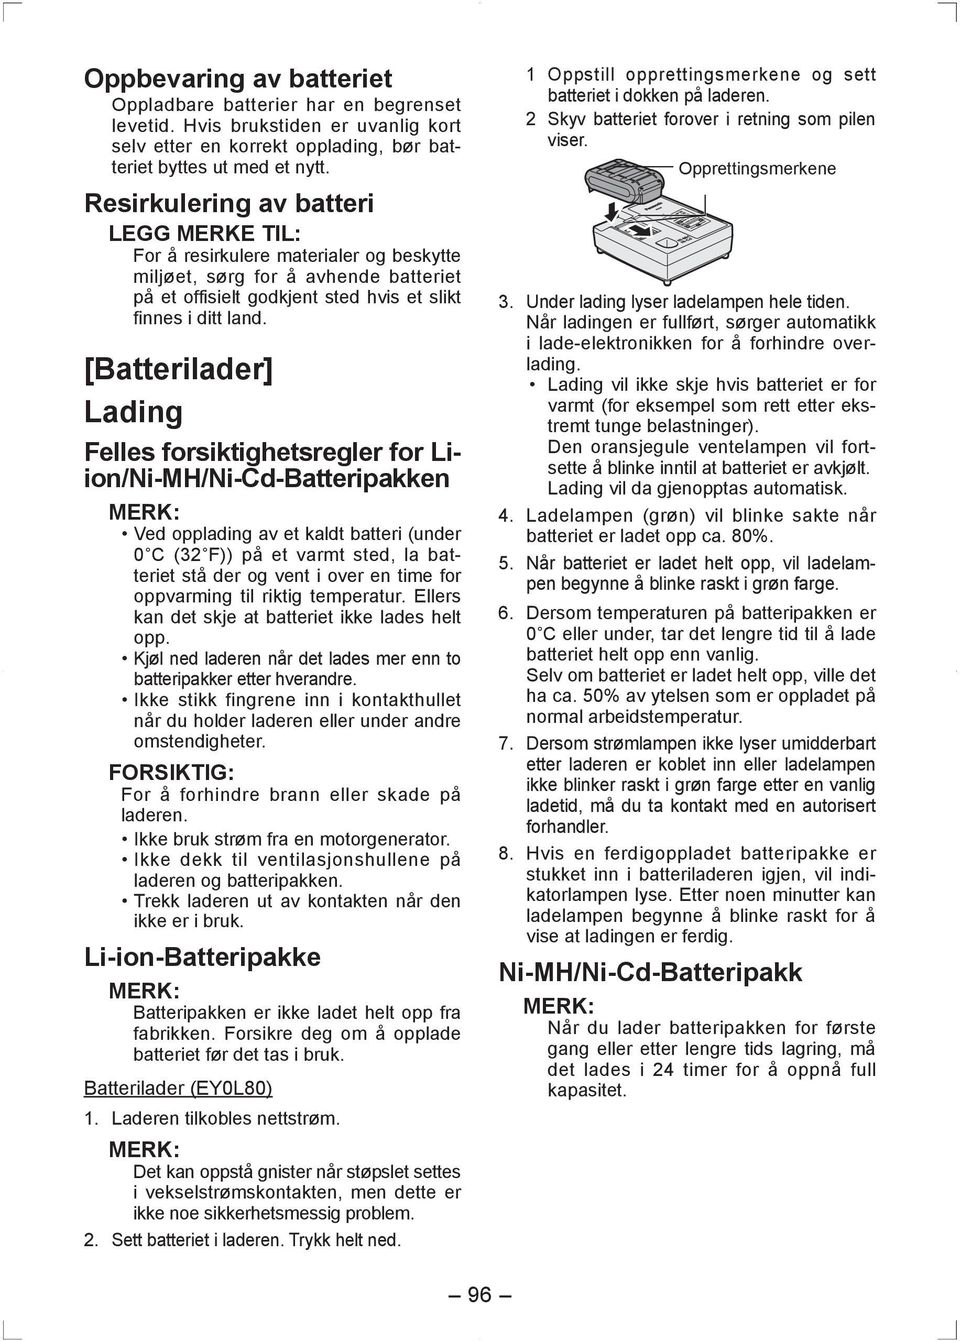 [Batterilader] Lading Felles forsiktighetsregler for Liion/Ni-MH/Ni-Cd-Batteripakken MERK: Ved opplading av et kaldt batteri (under 0 C (32 F)) på et varmt sted, la batteriet stå der og vent i over